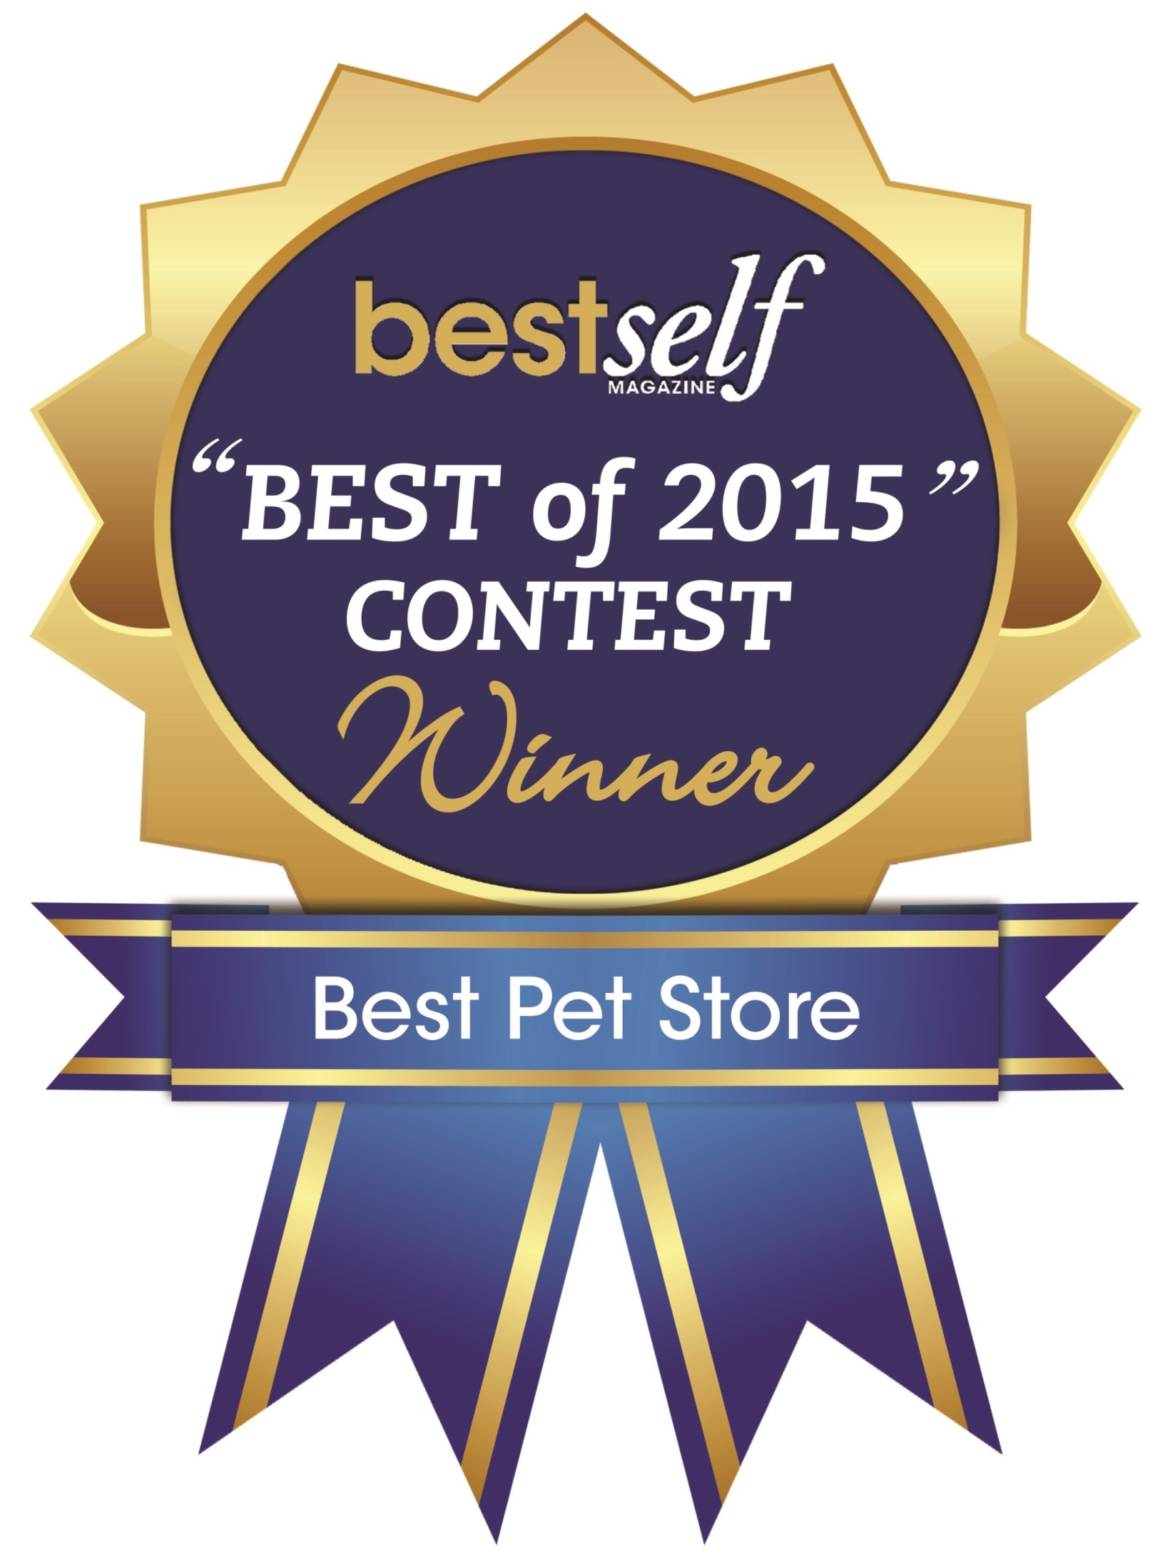 bestself_contest_winner_2015-2.jpg